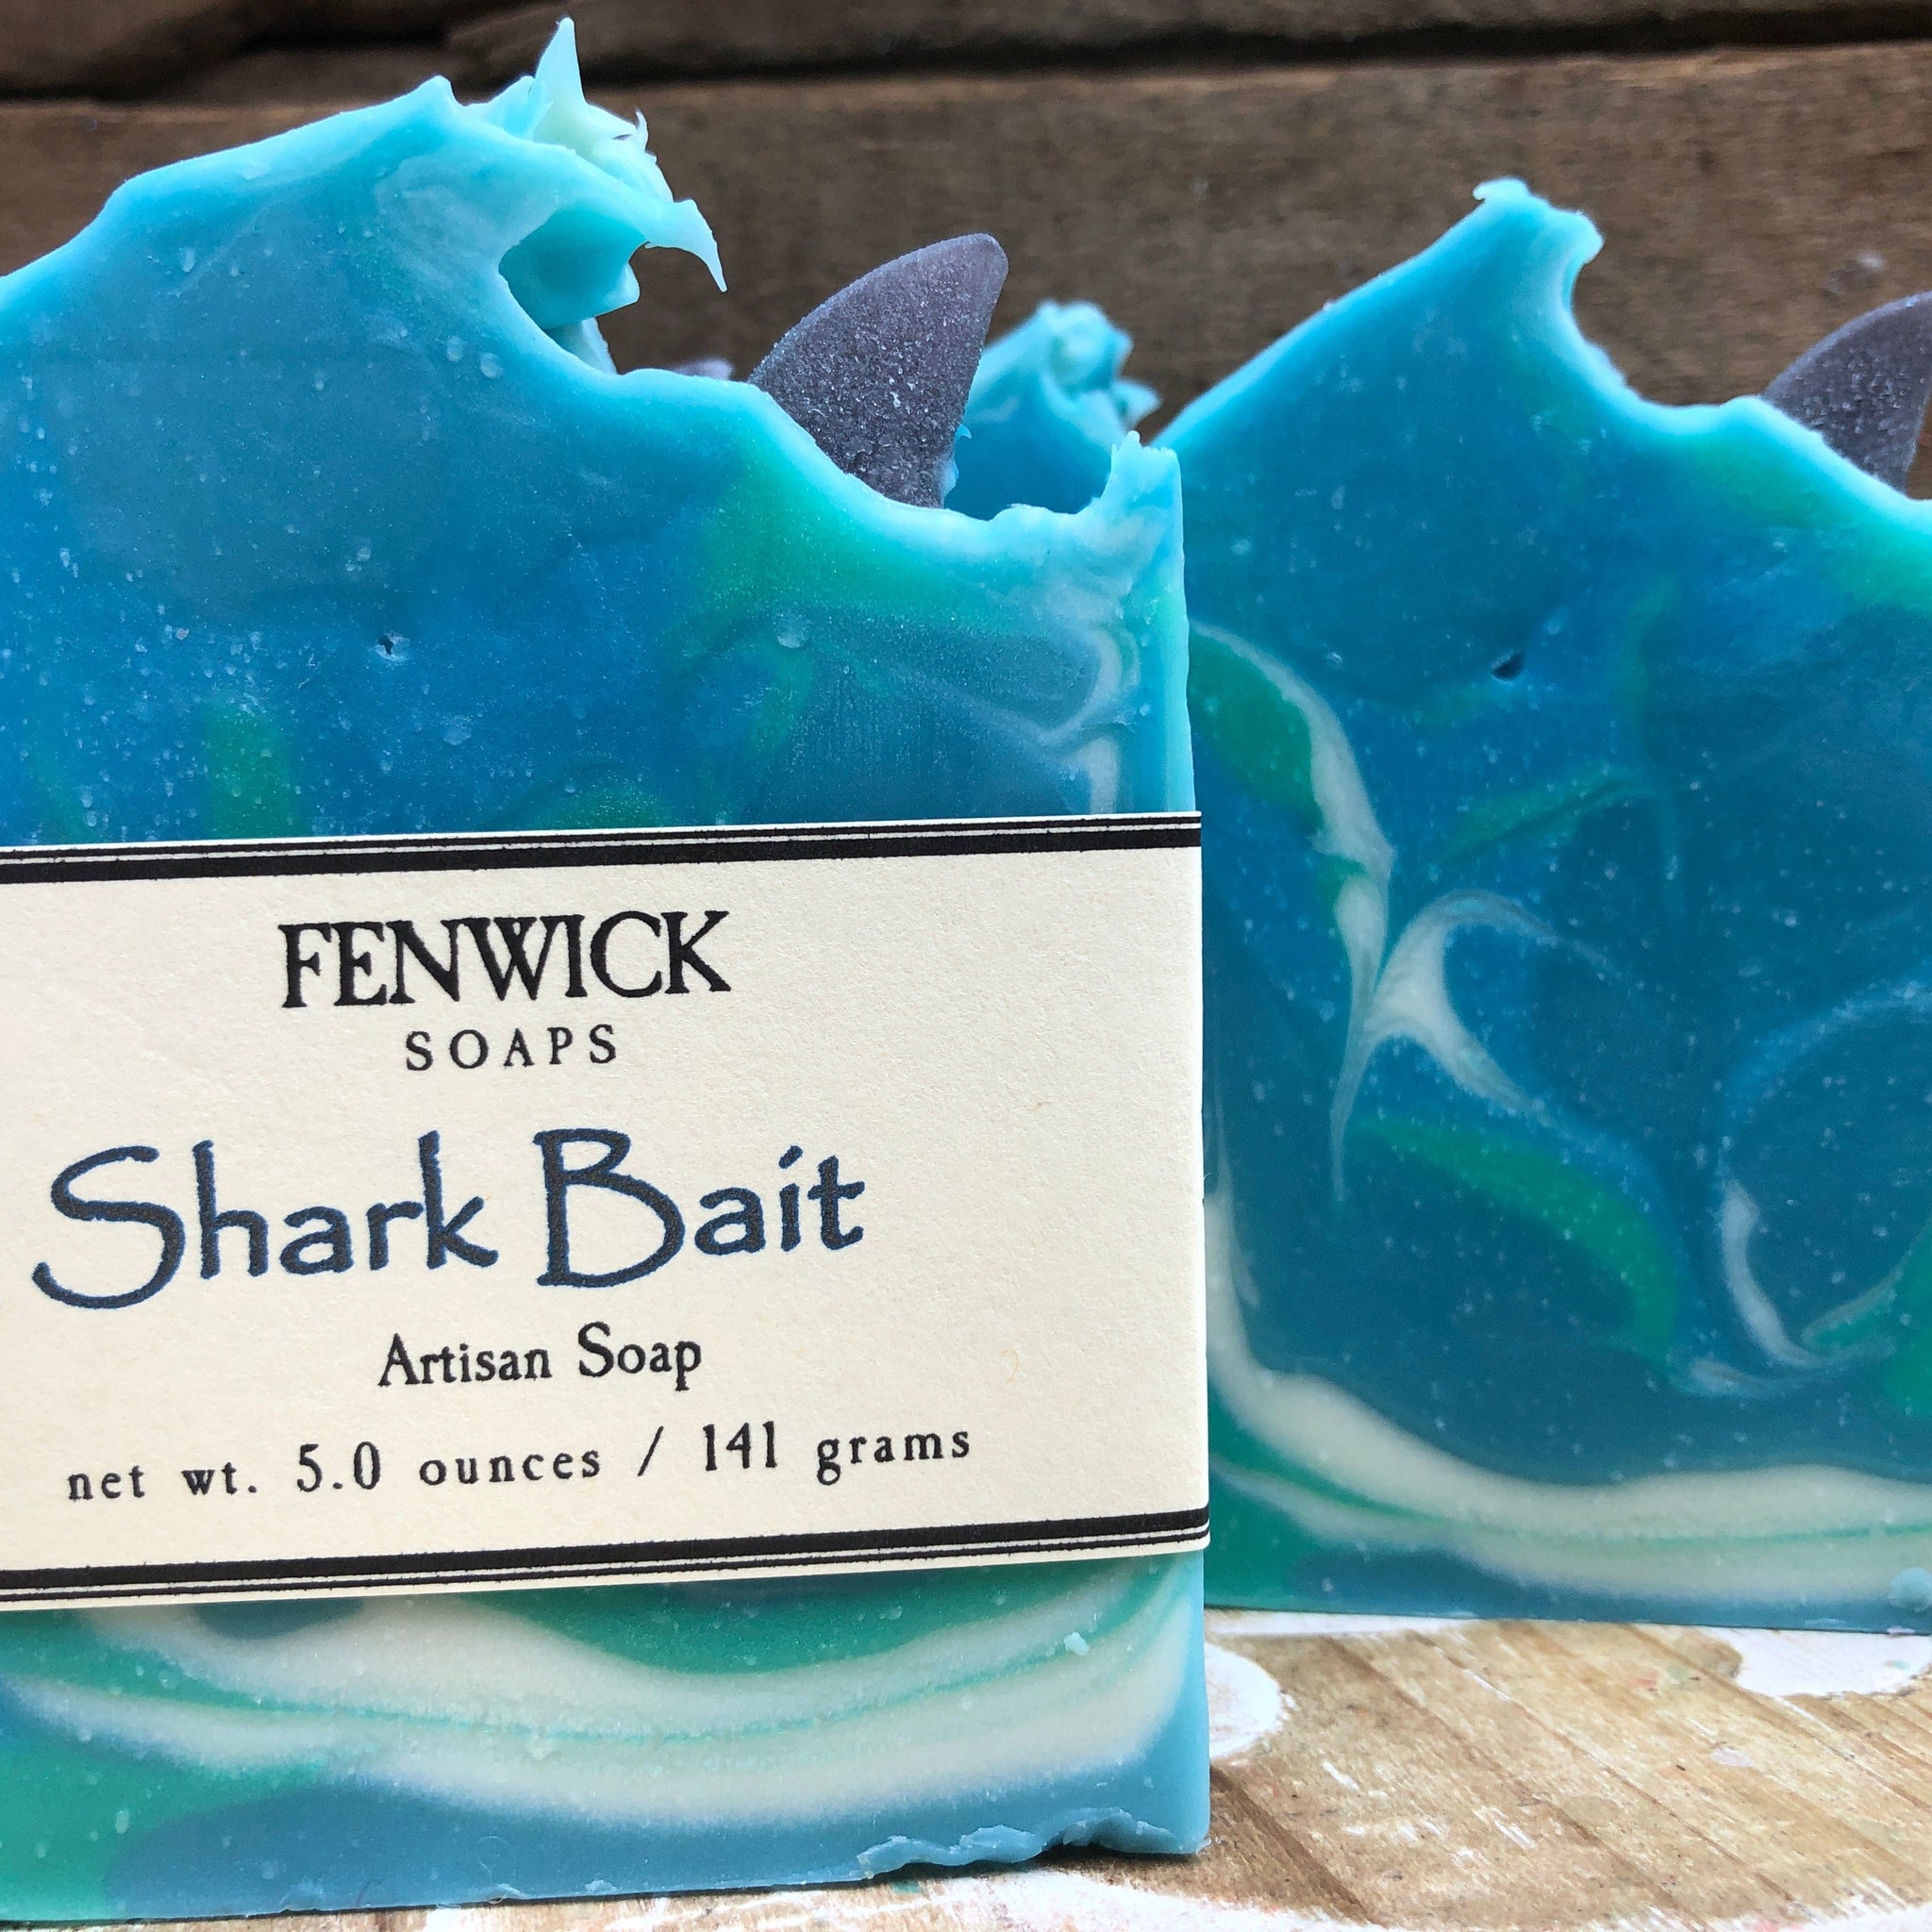 Fenwick Soap - Shark Bait